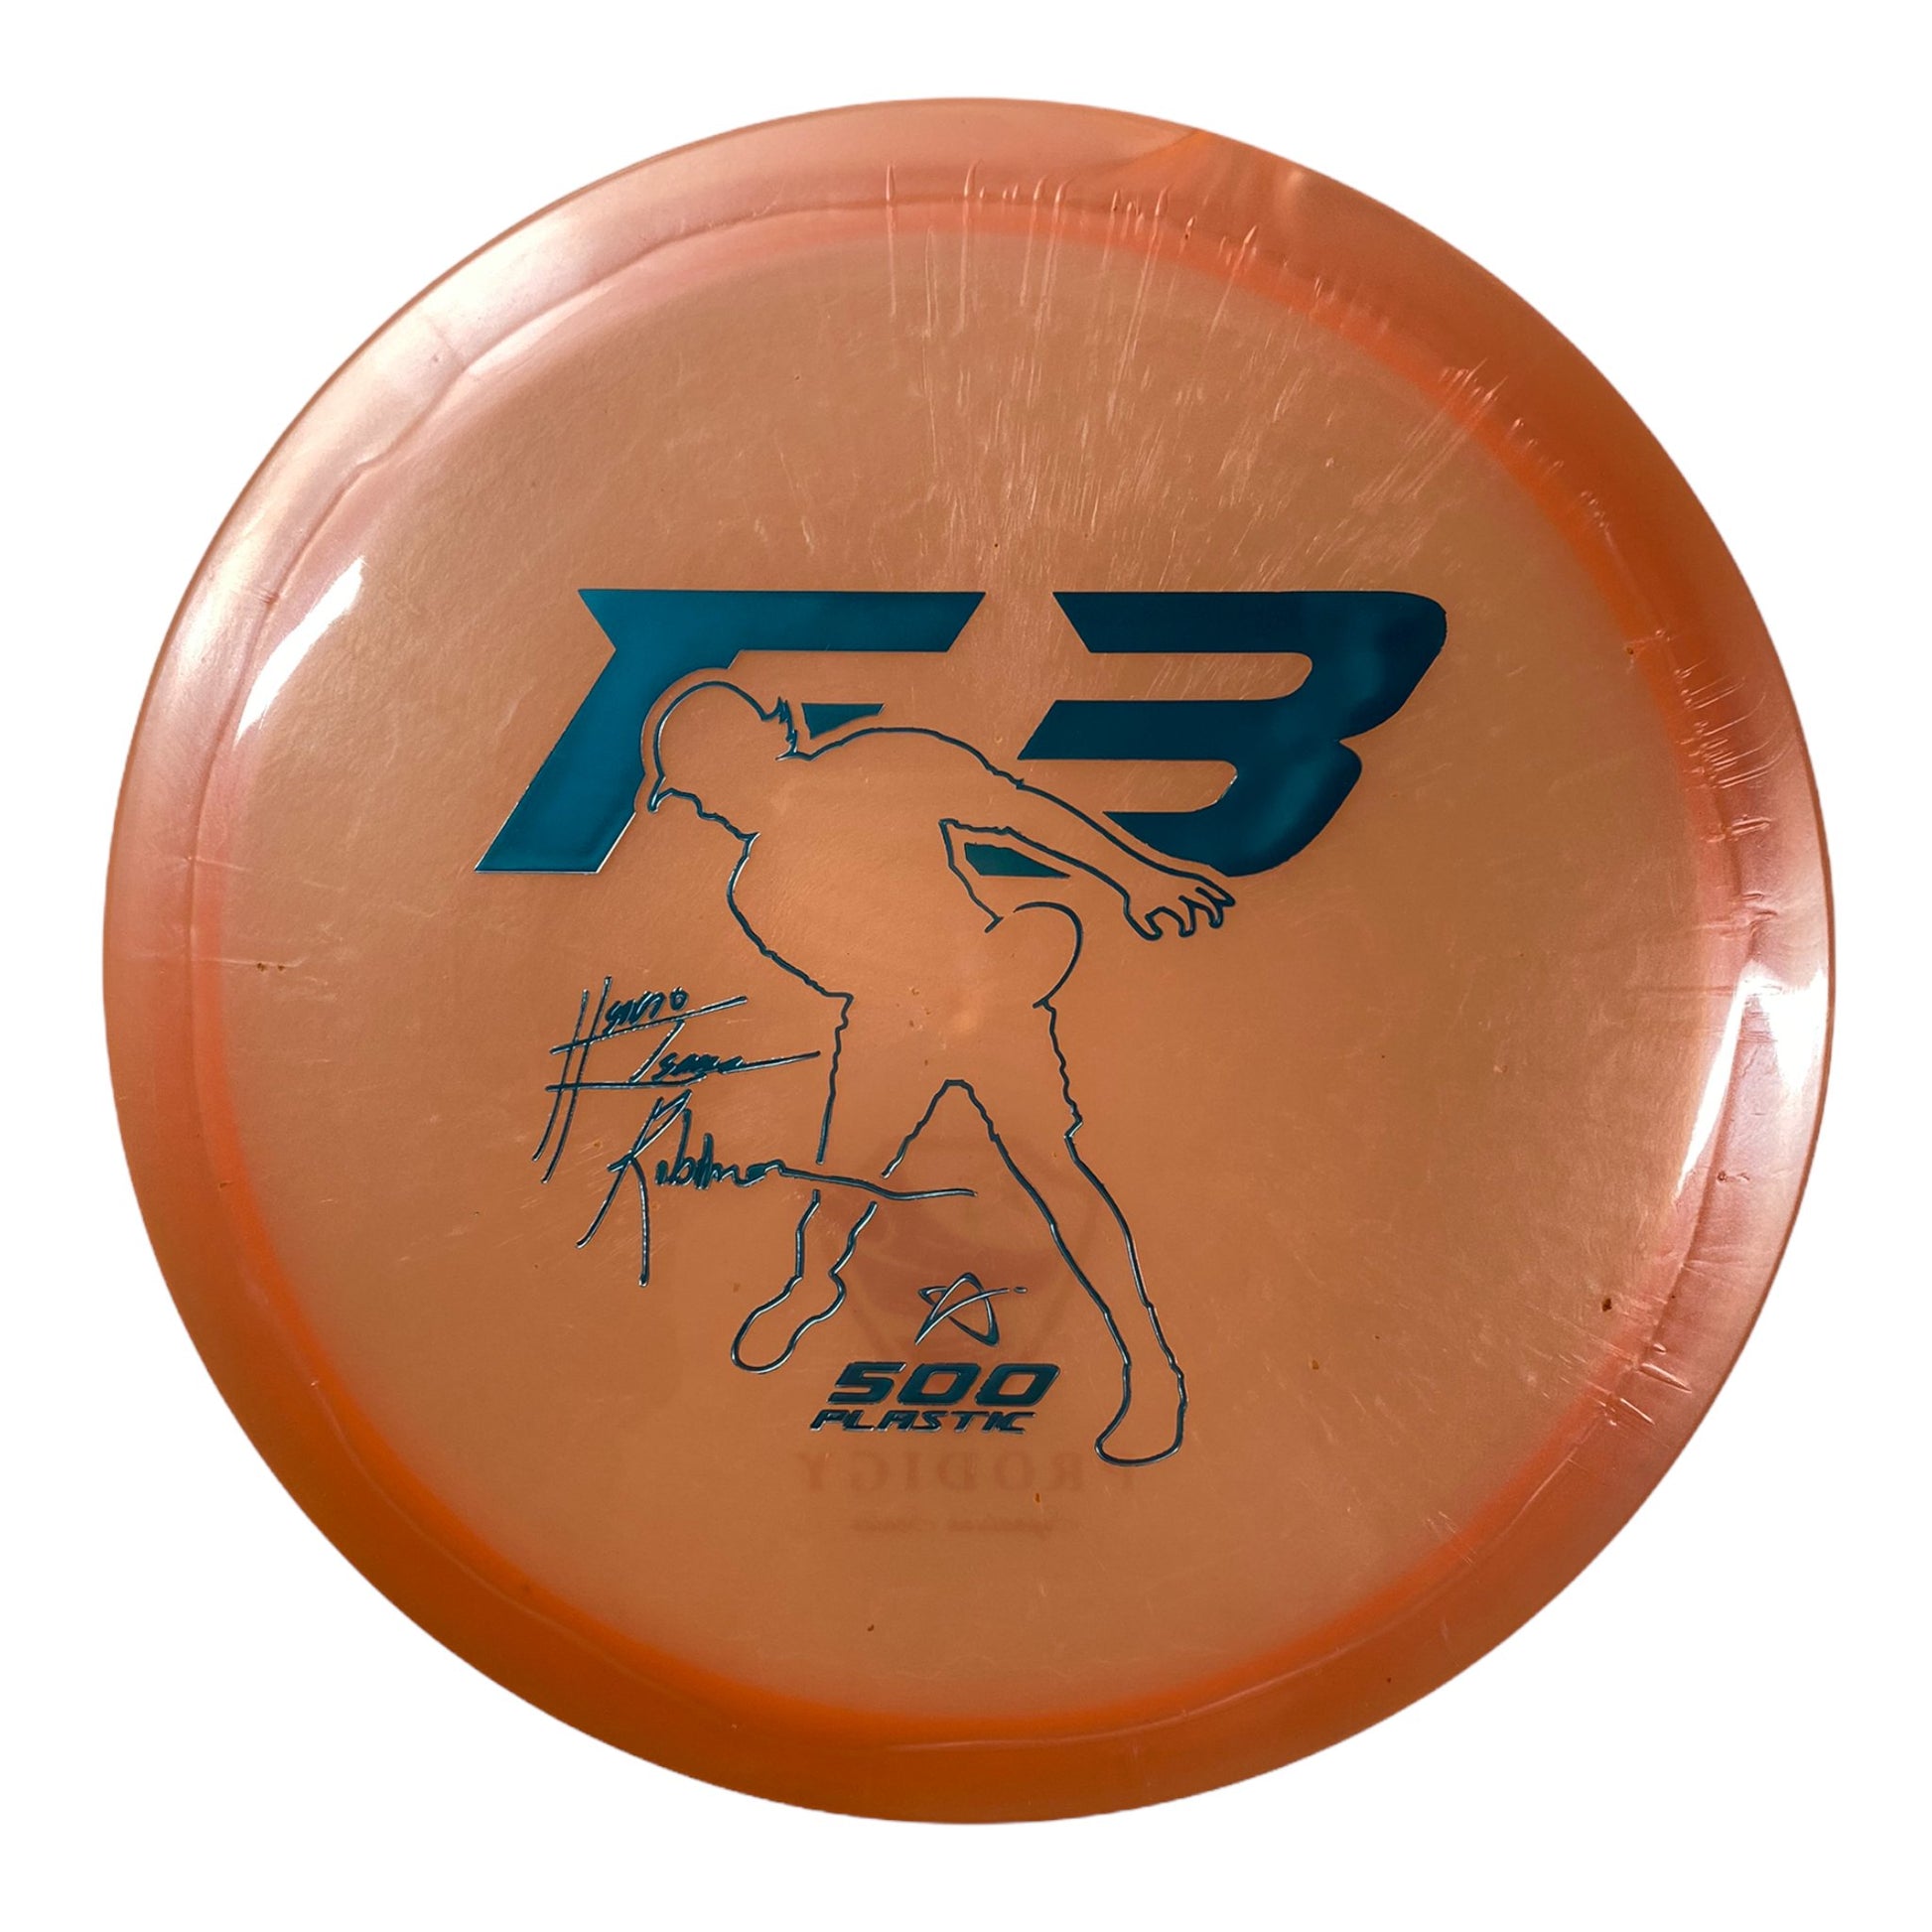 Prodigy Disc F3 | 500 | Peach/Silver 174-175g (Isaac Robinson) Disc Golf